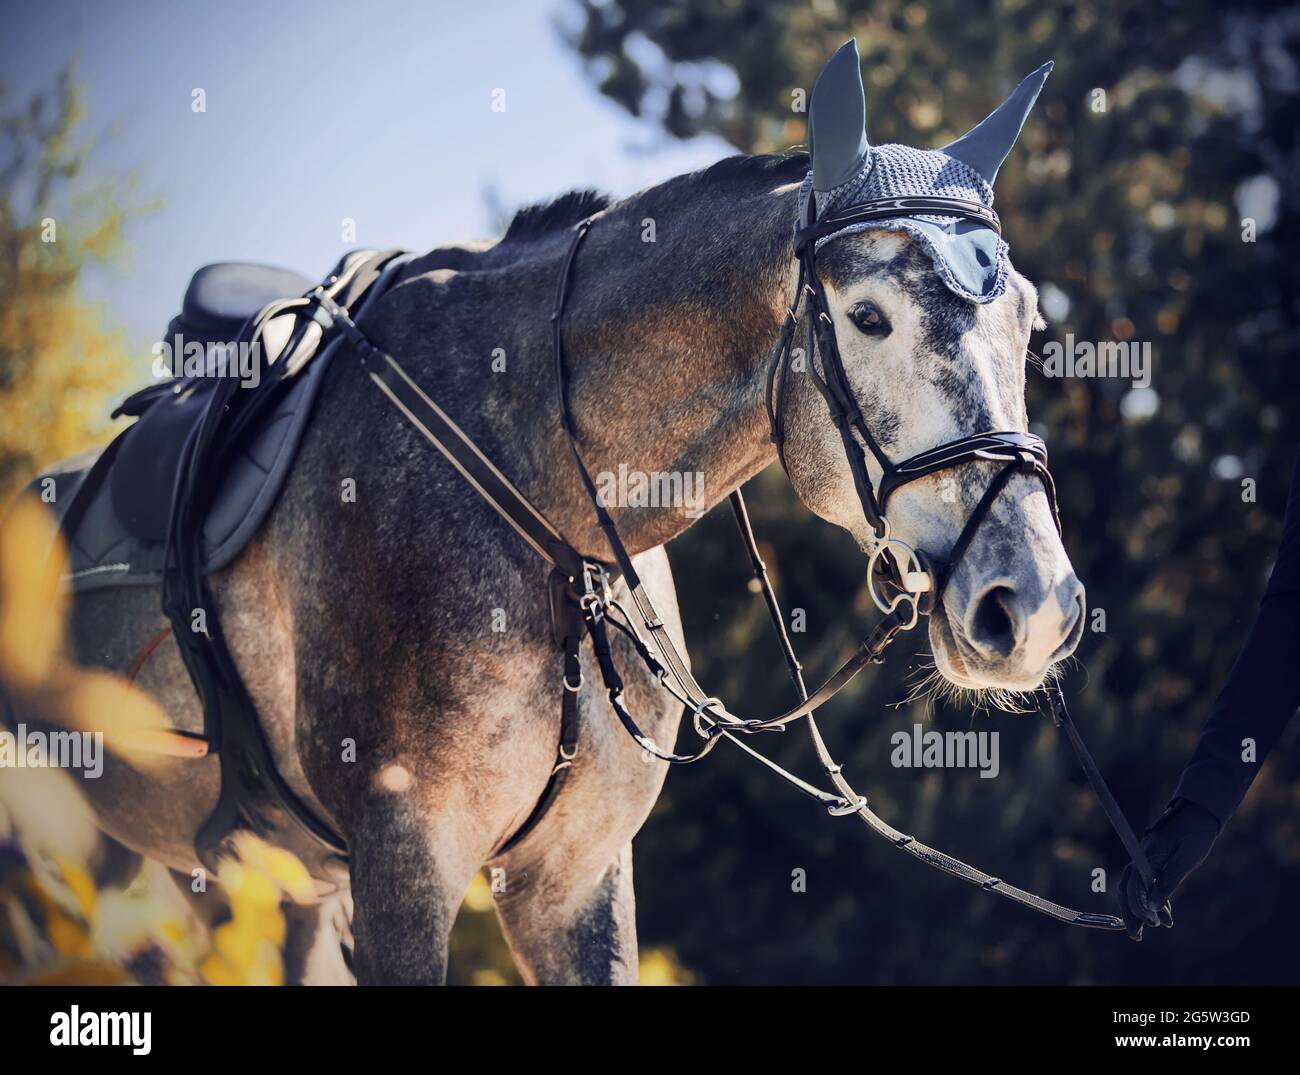 Porträt eines schönen grauen Rennpferdes mit einem Sattel auf dem Rücken, das von einem Pferdezüchter am Zaumzeug an einem sonnigen Tag unter dem Laub des Tr geführt wird Stockfoto